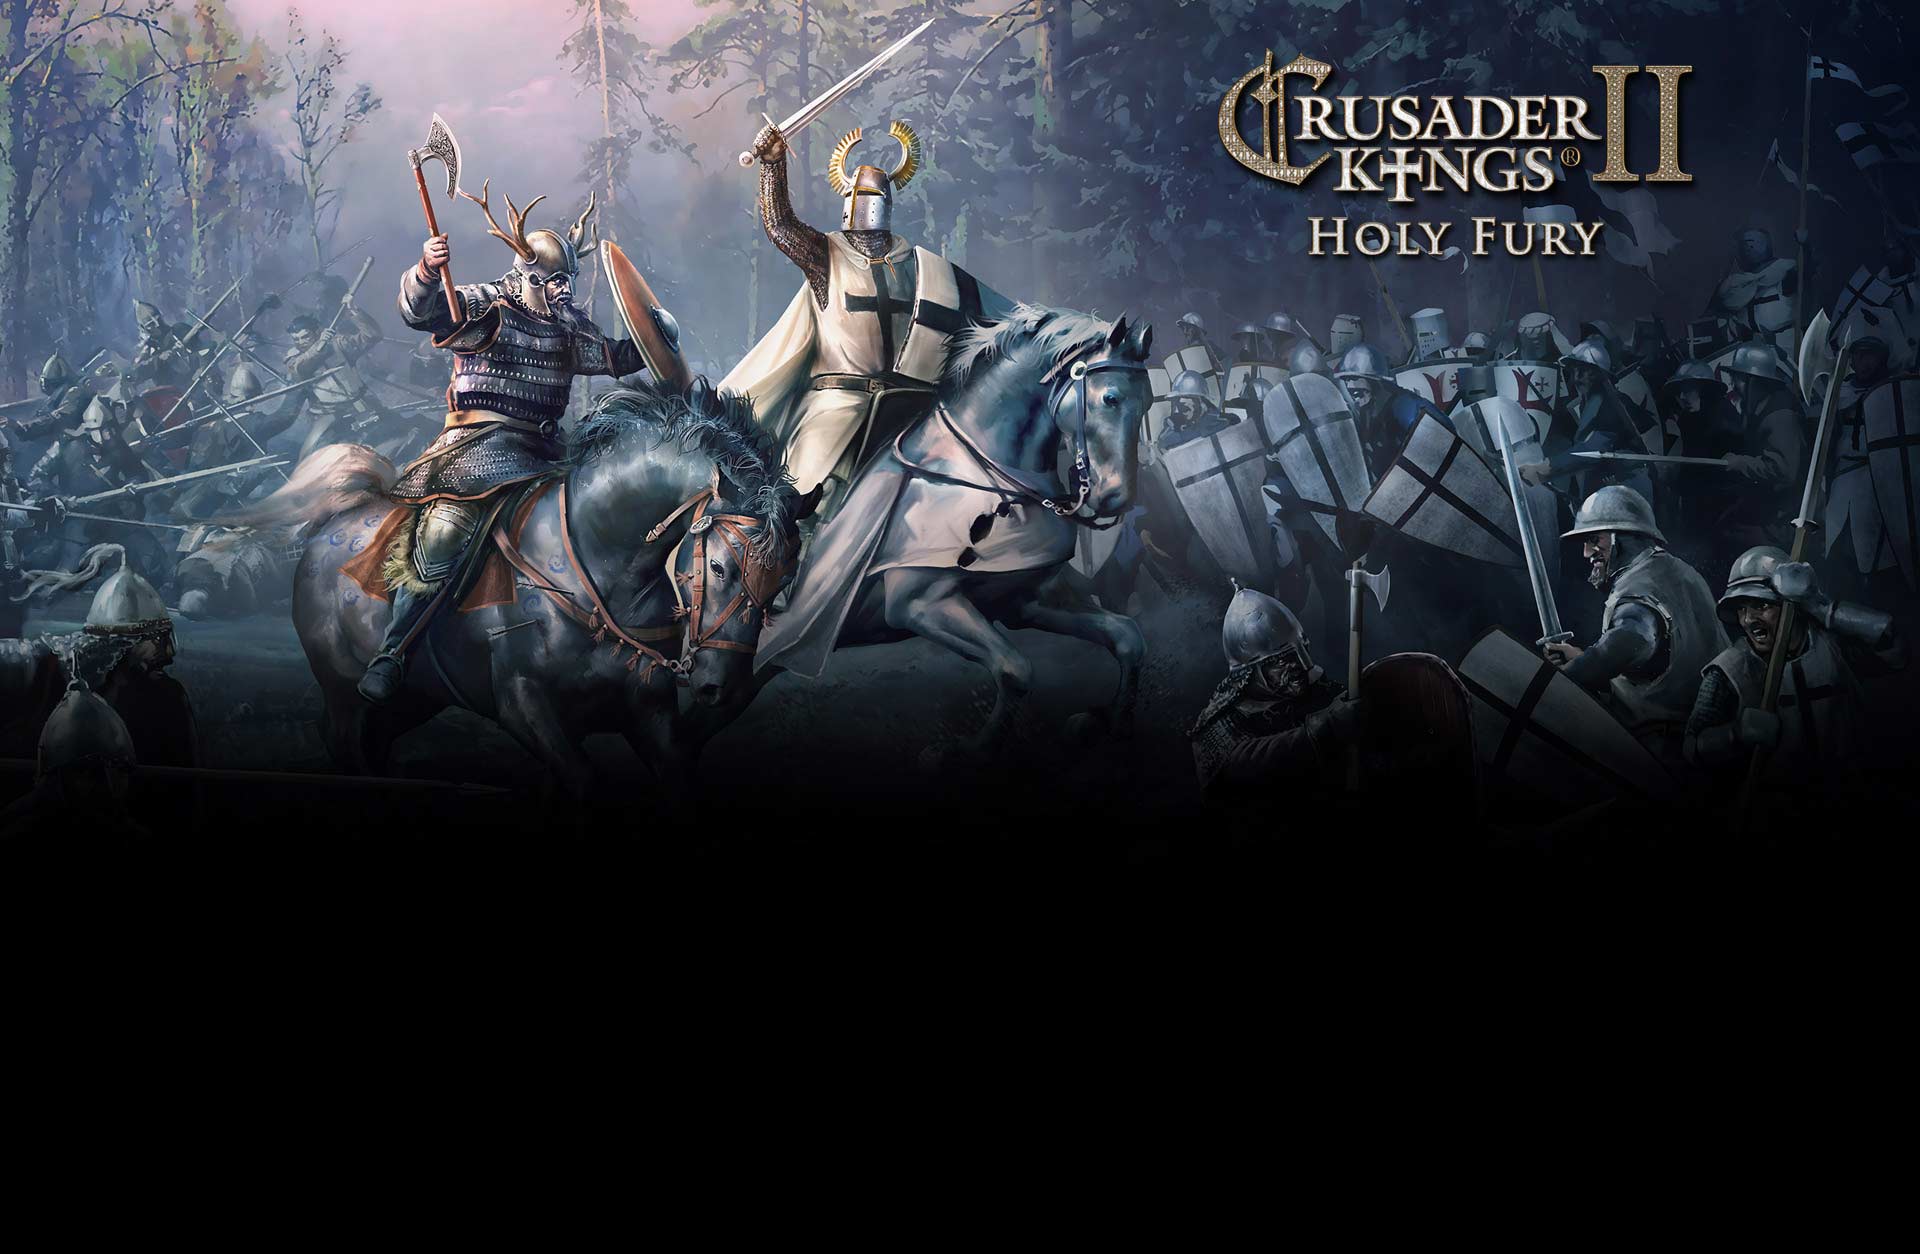 Crusader Kings II: Holy Fury - DLC